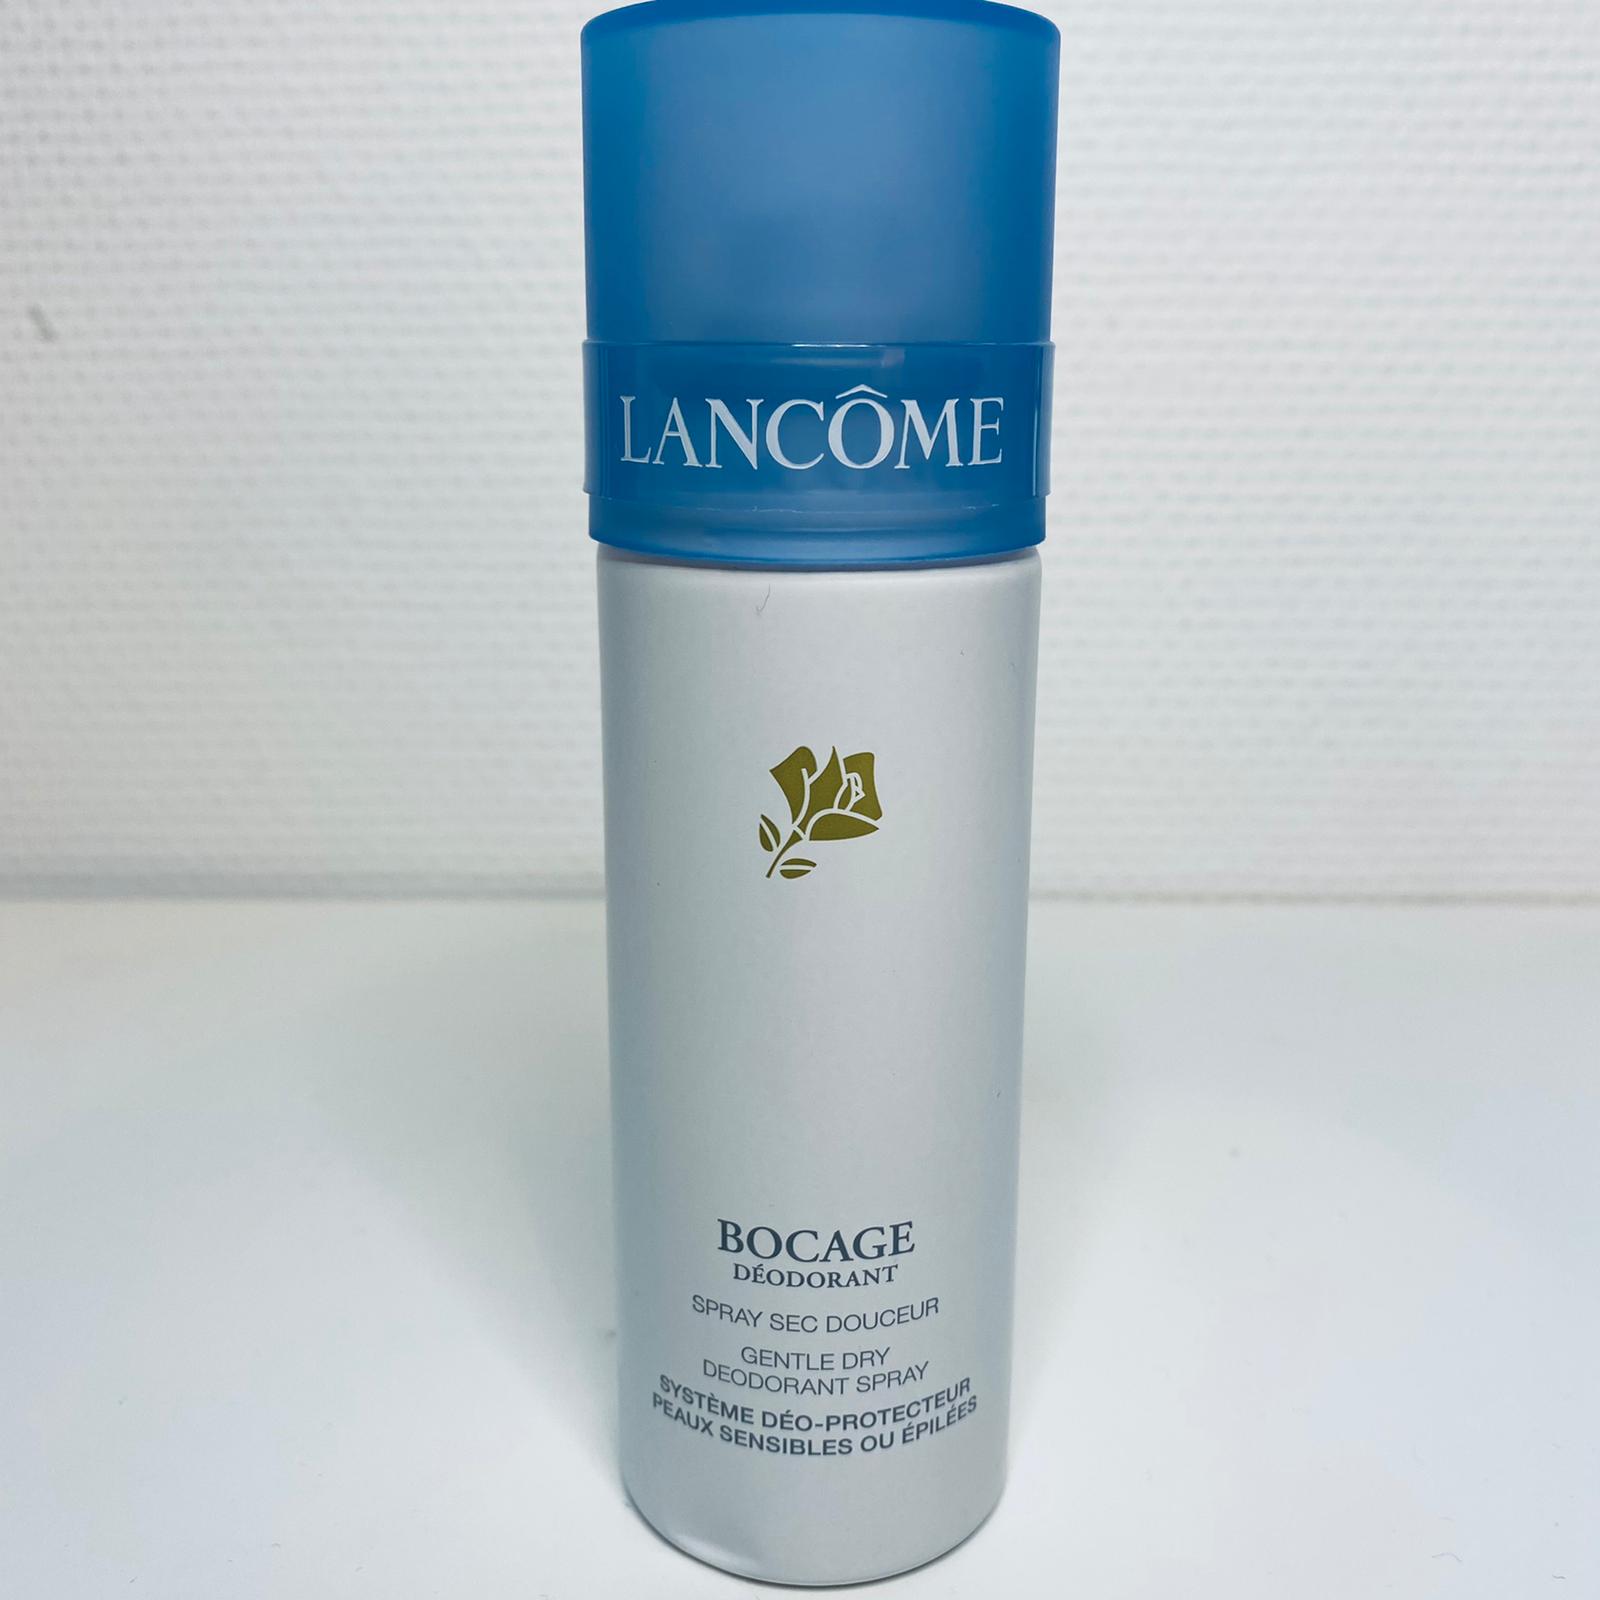 Lancome Bocage deodorant gentle dry spray 125 ml